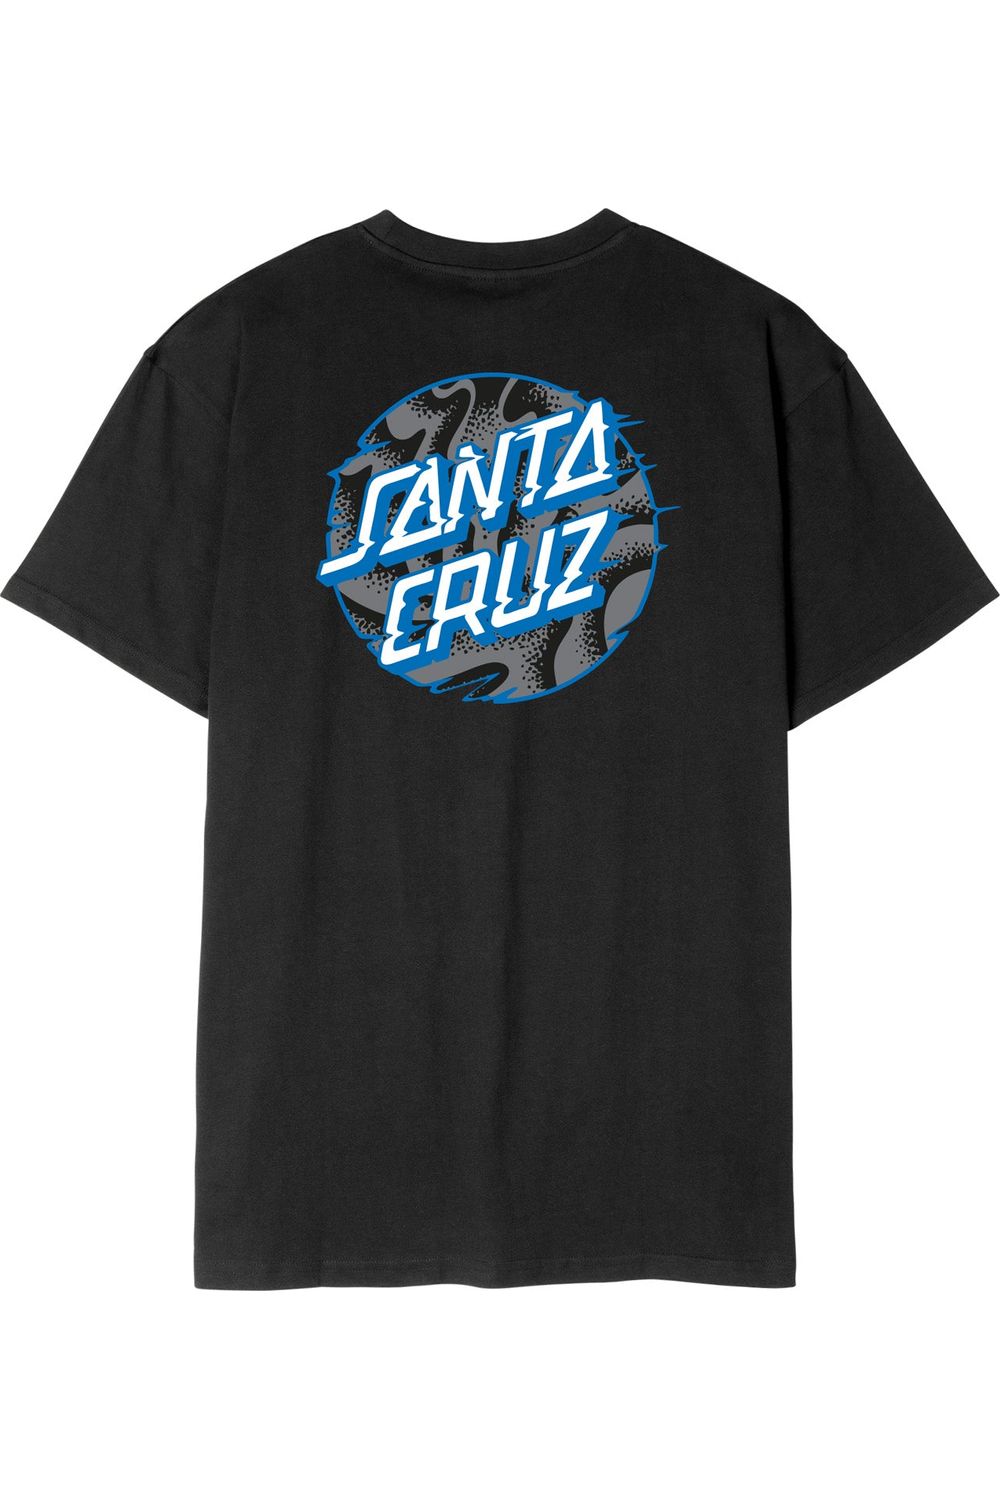 Santa Cruz Vivid Slick Dot T-Shirt Black